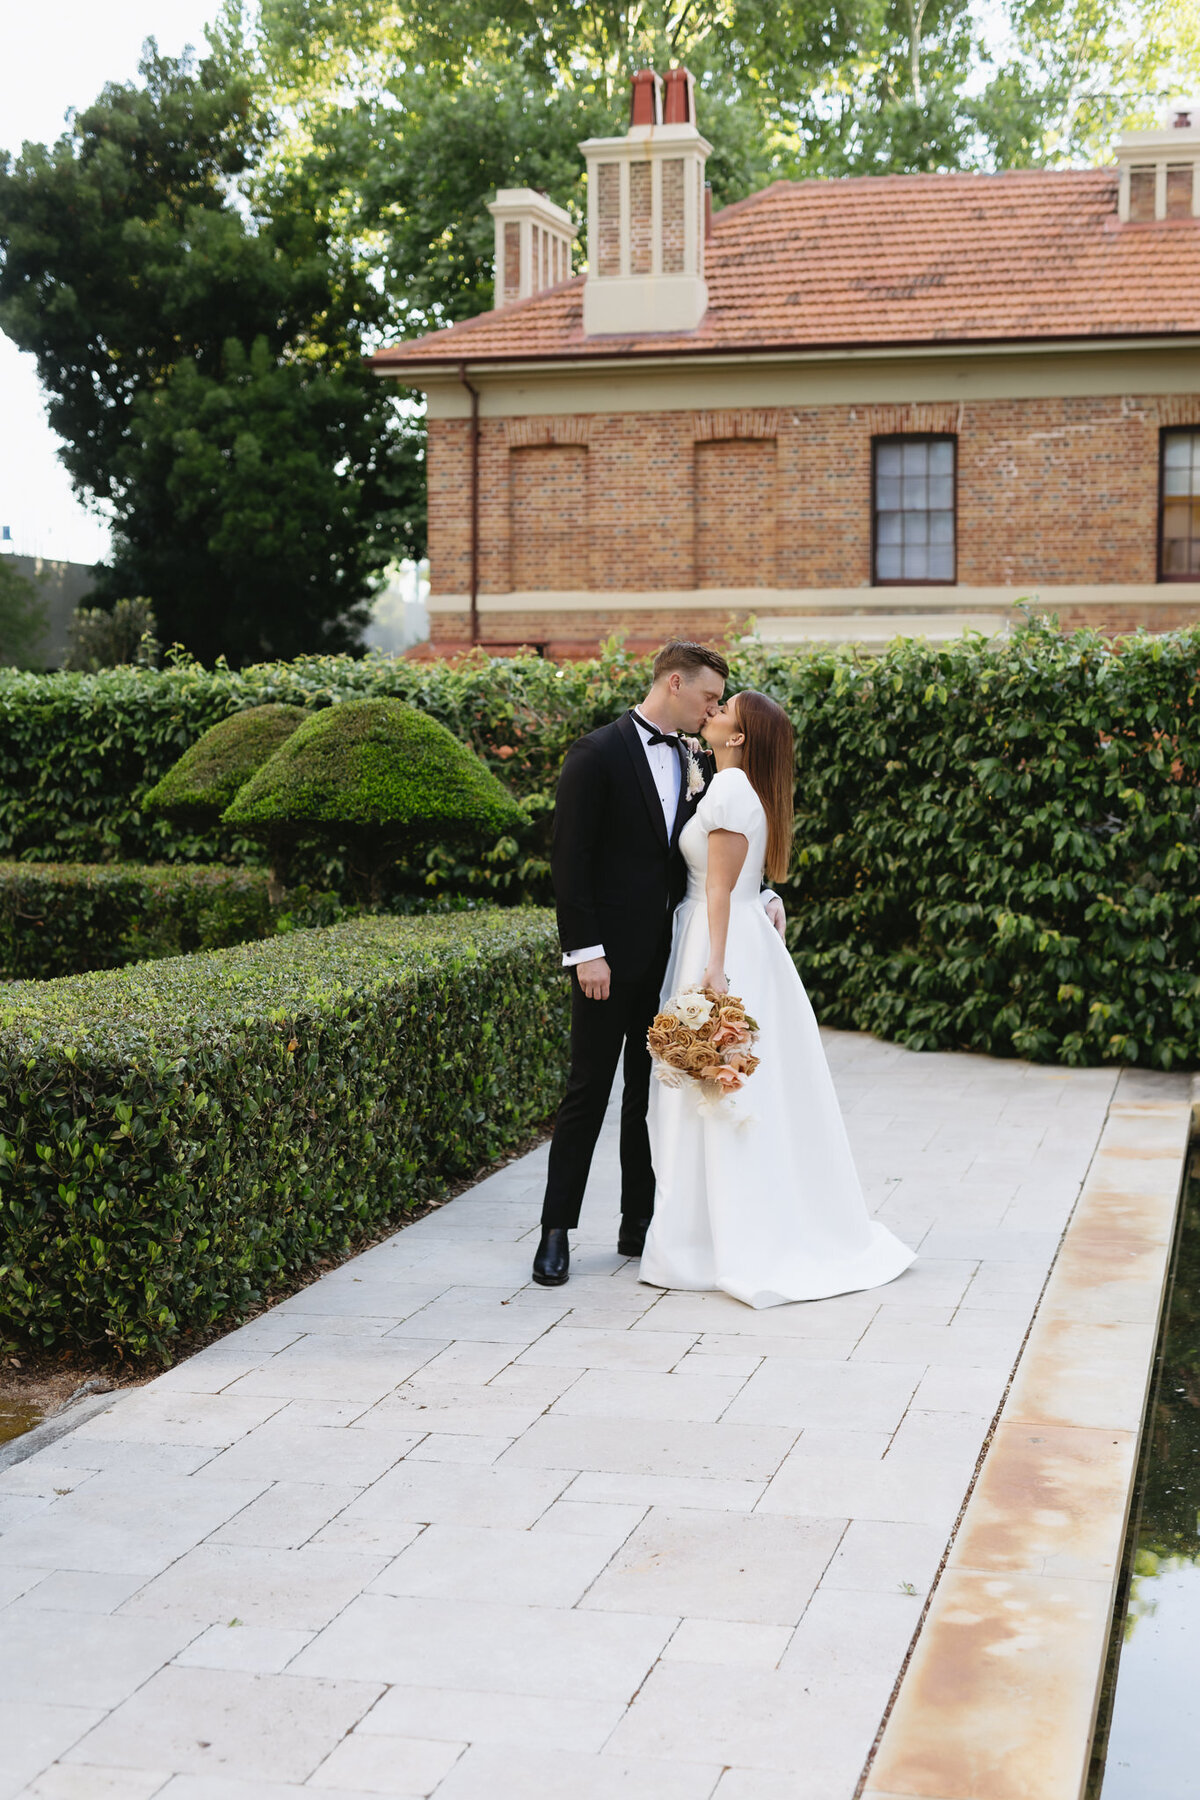 Australian Wedding Photographer Kath Young - Lara & Nick, Lamonts Wedding-51